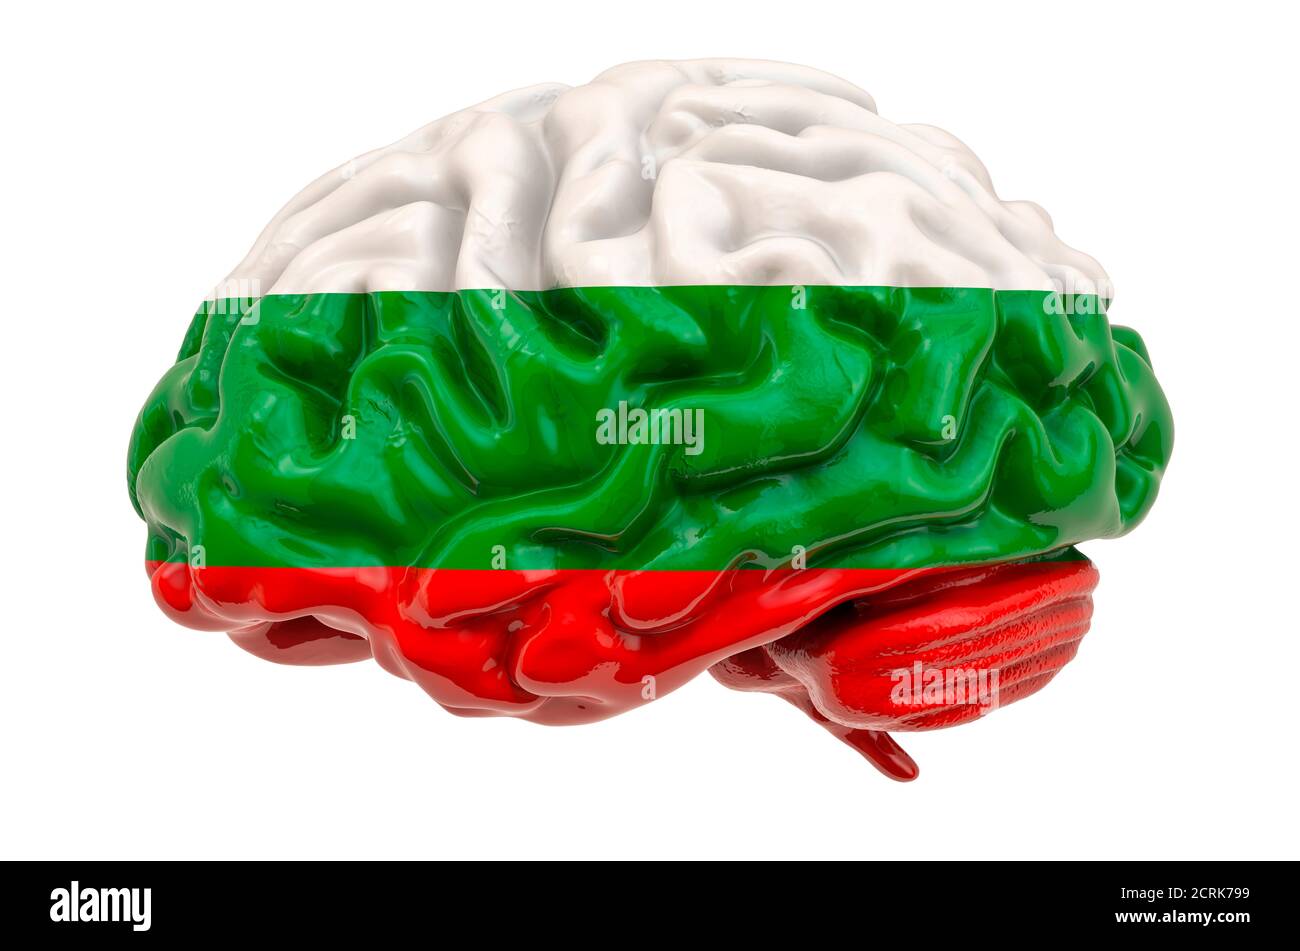 Cerebro humano con bandera búlgara. Investigación científica y educación en Bulgaria concepto, 3D rendering aislado sobre fondo blanco Foto de stock